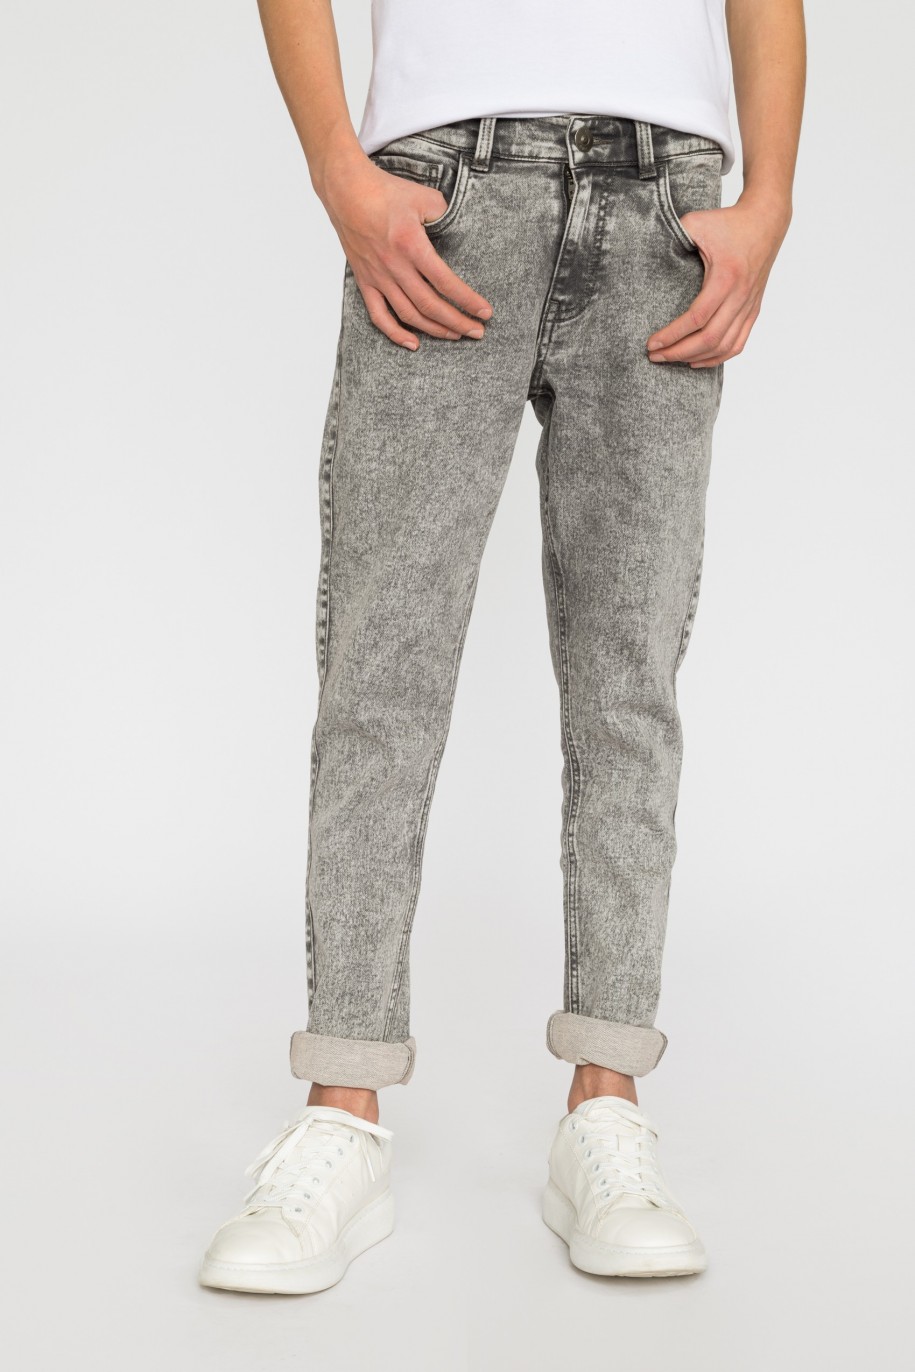 Szare jeansowe spodnie dla chłopaka - 32093